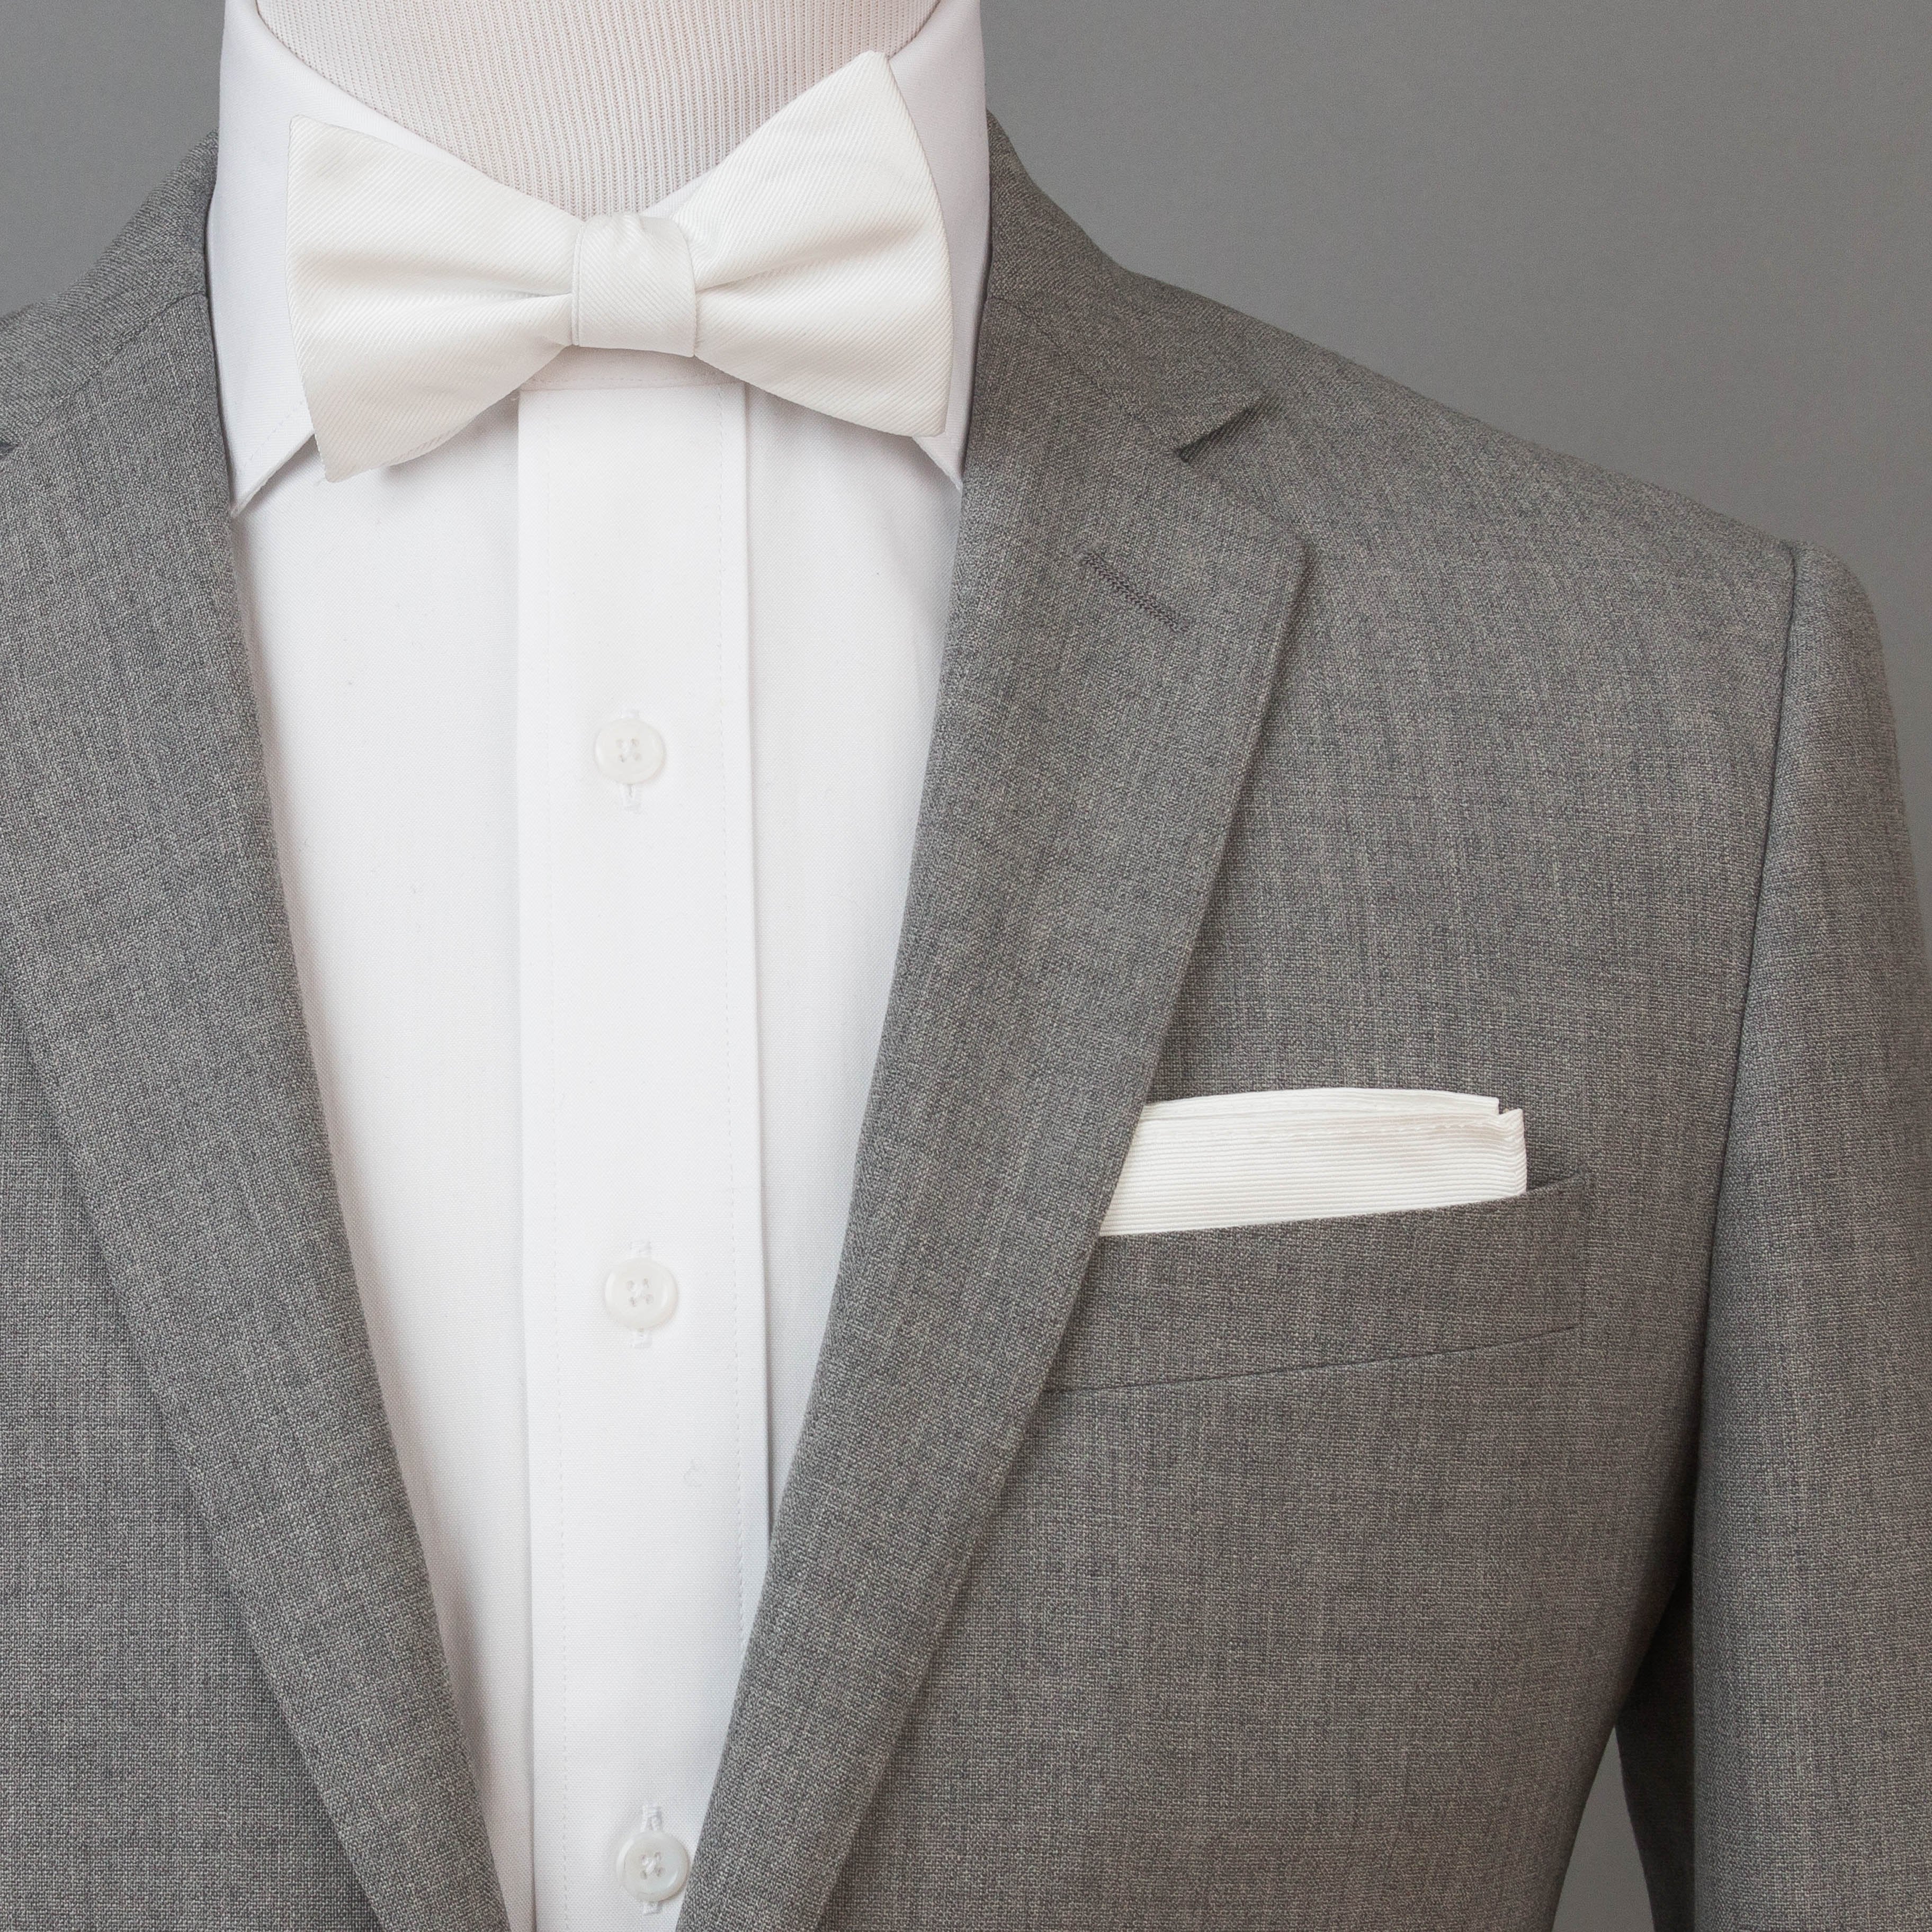 Solid White Bow Tie (Self-tie) (Wall Street) - SprezzaBox